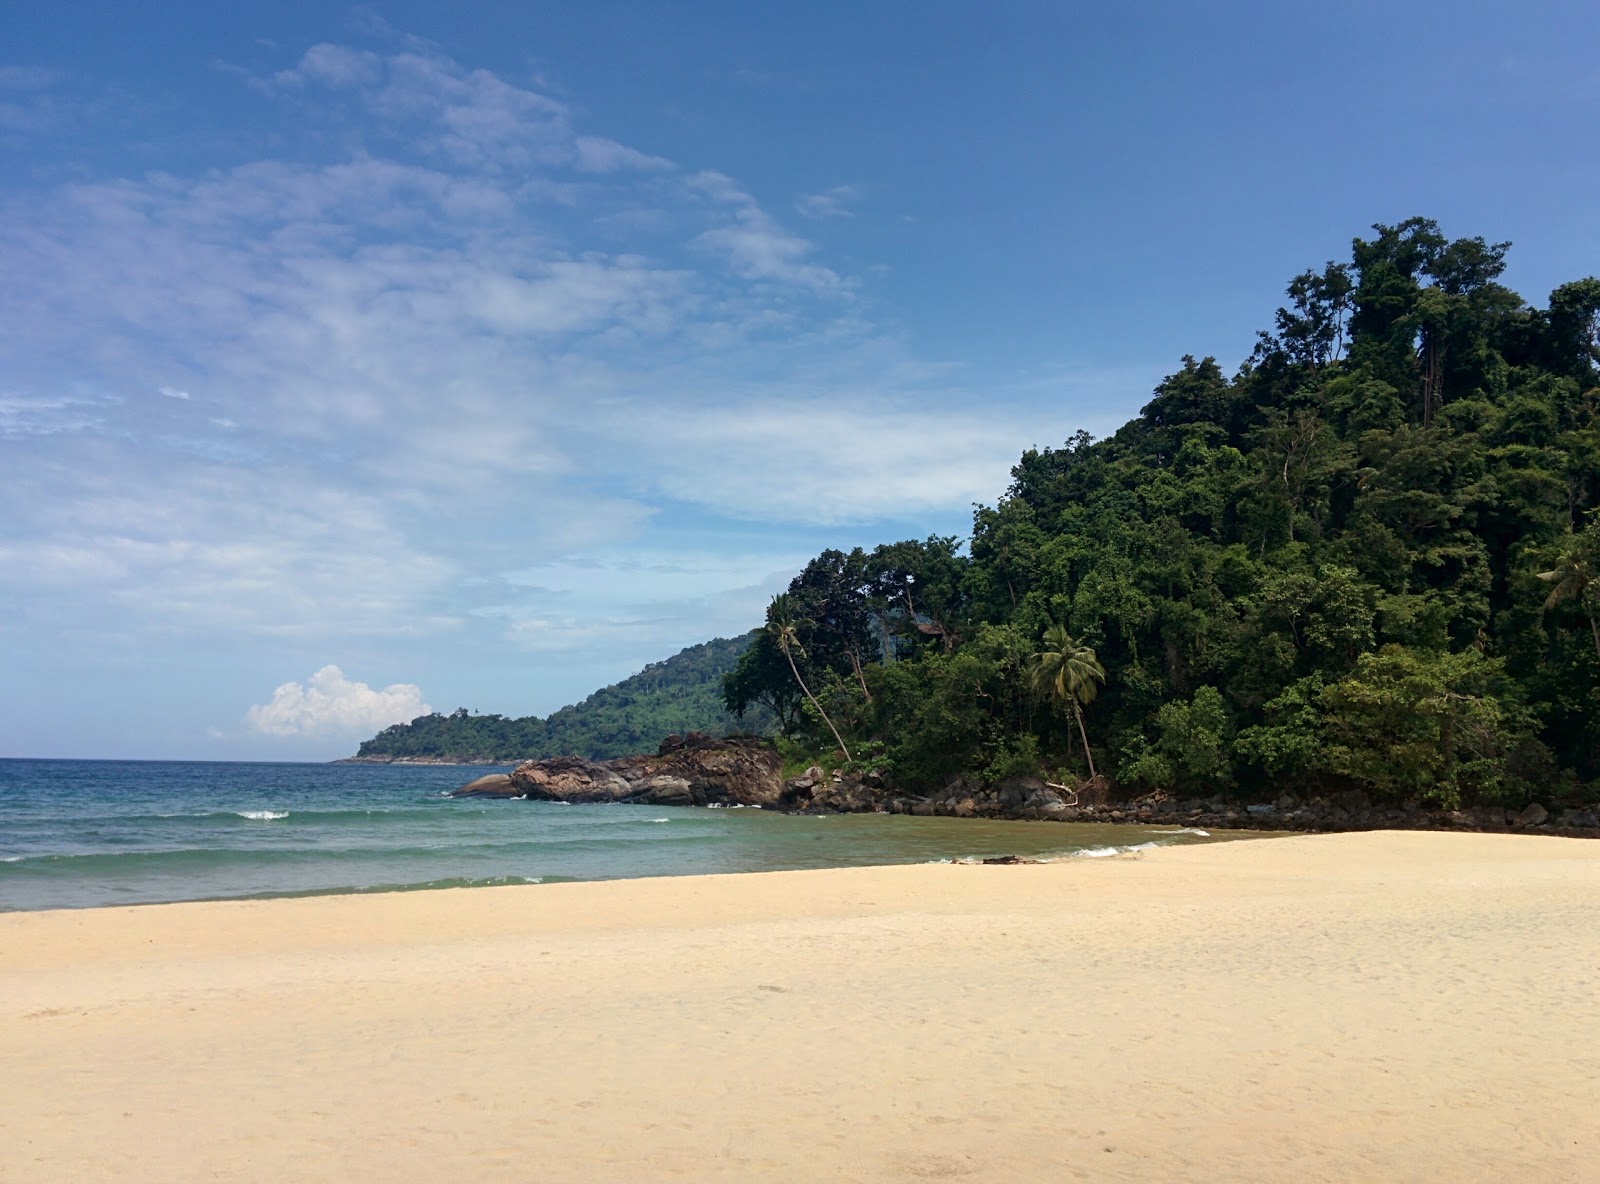 Juara Beach'in fotoğrafı - rahatlamayı sevenler arasında popüler bir yer